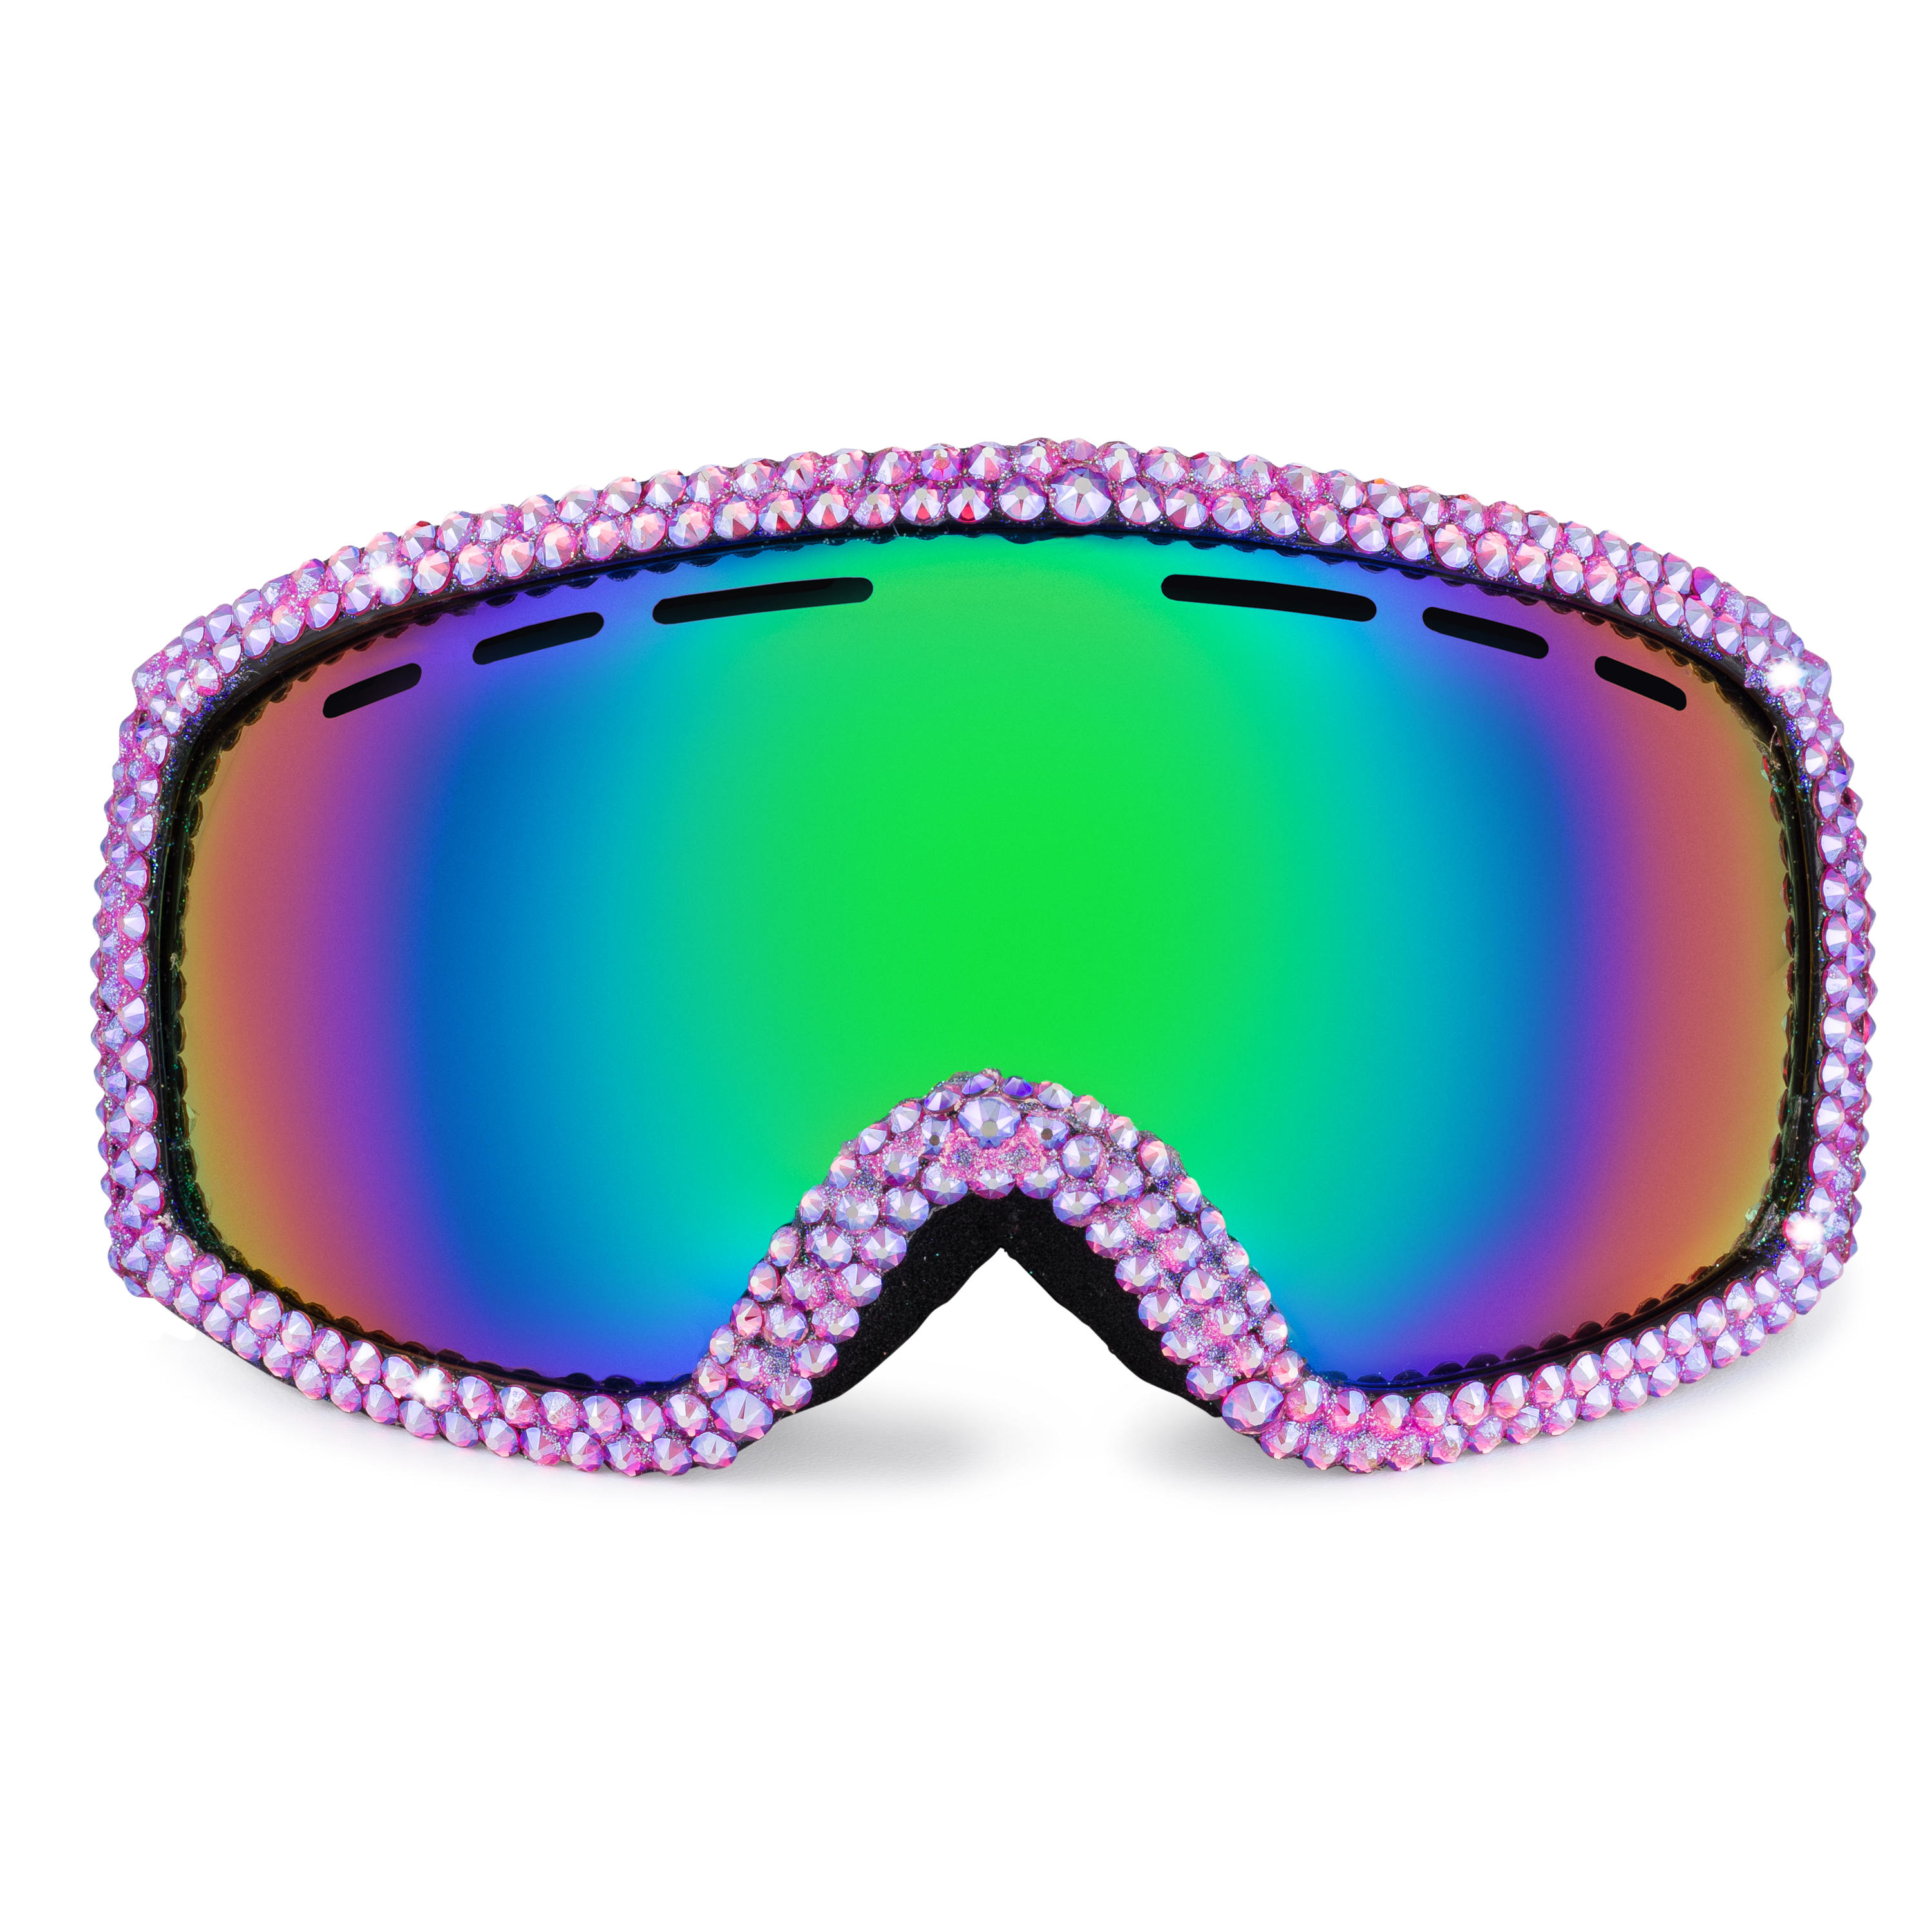 Accessoires Zonnebrillen & Eyewear Sportbrillen Iriserende Ruby Bling Bunny Skibril 